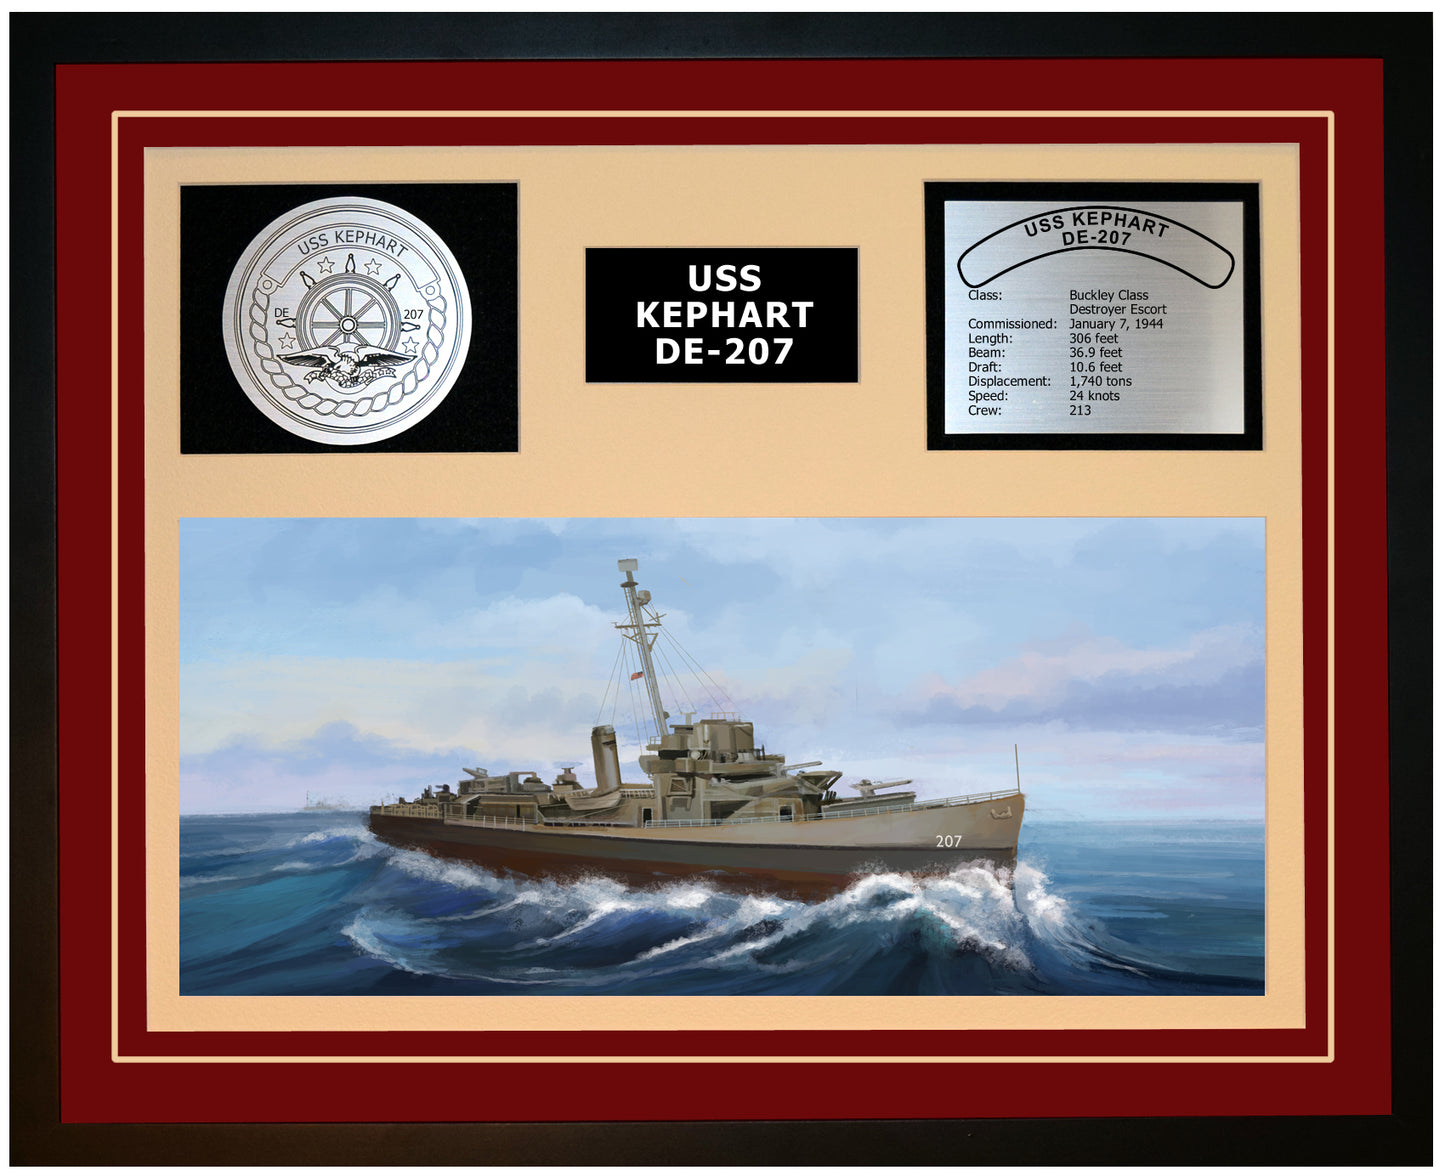 USS KEPHART DE-207 Framed Navy Ship Display Burgundy